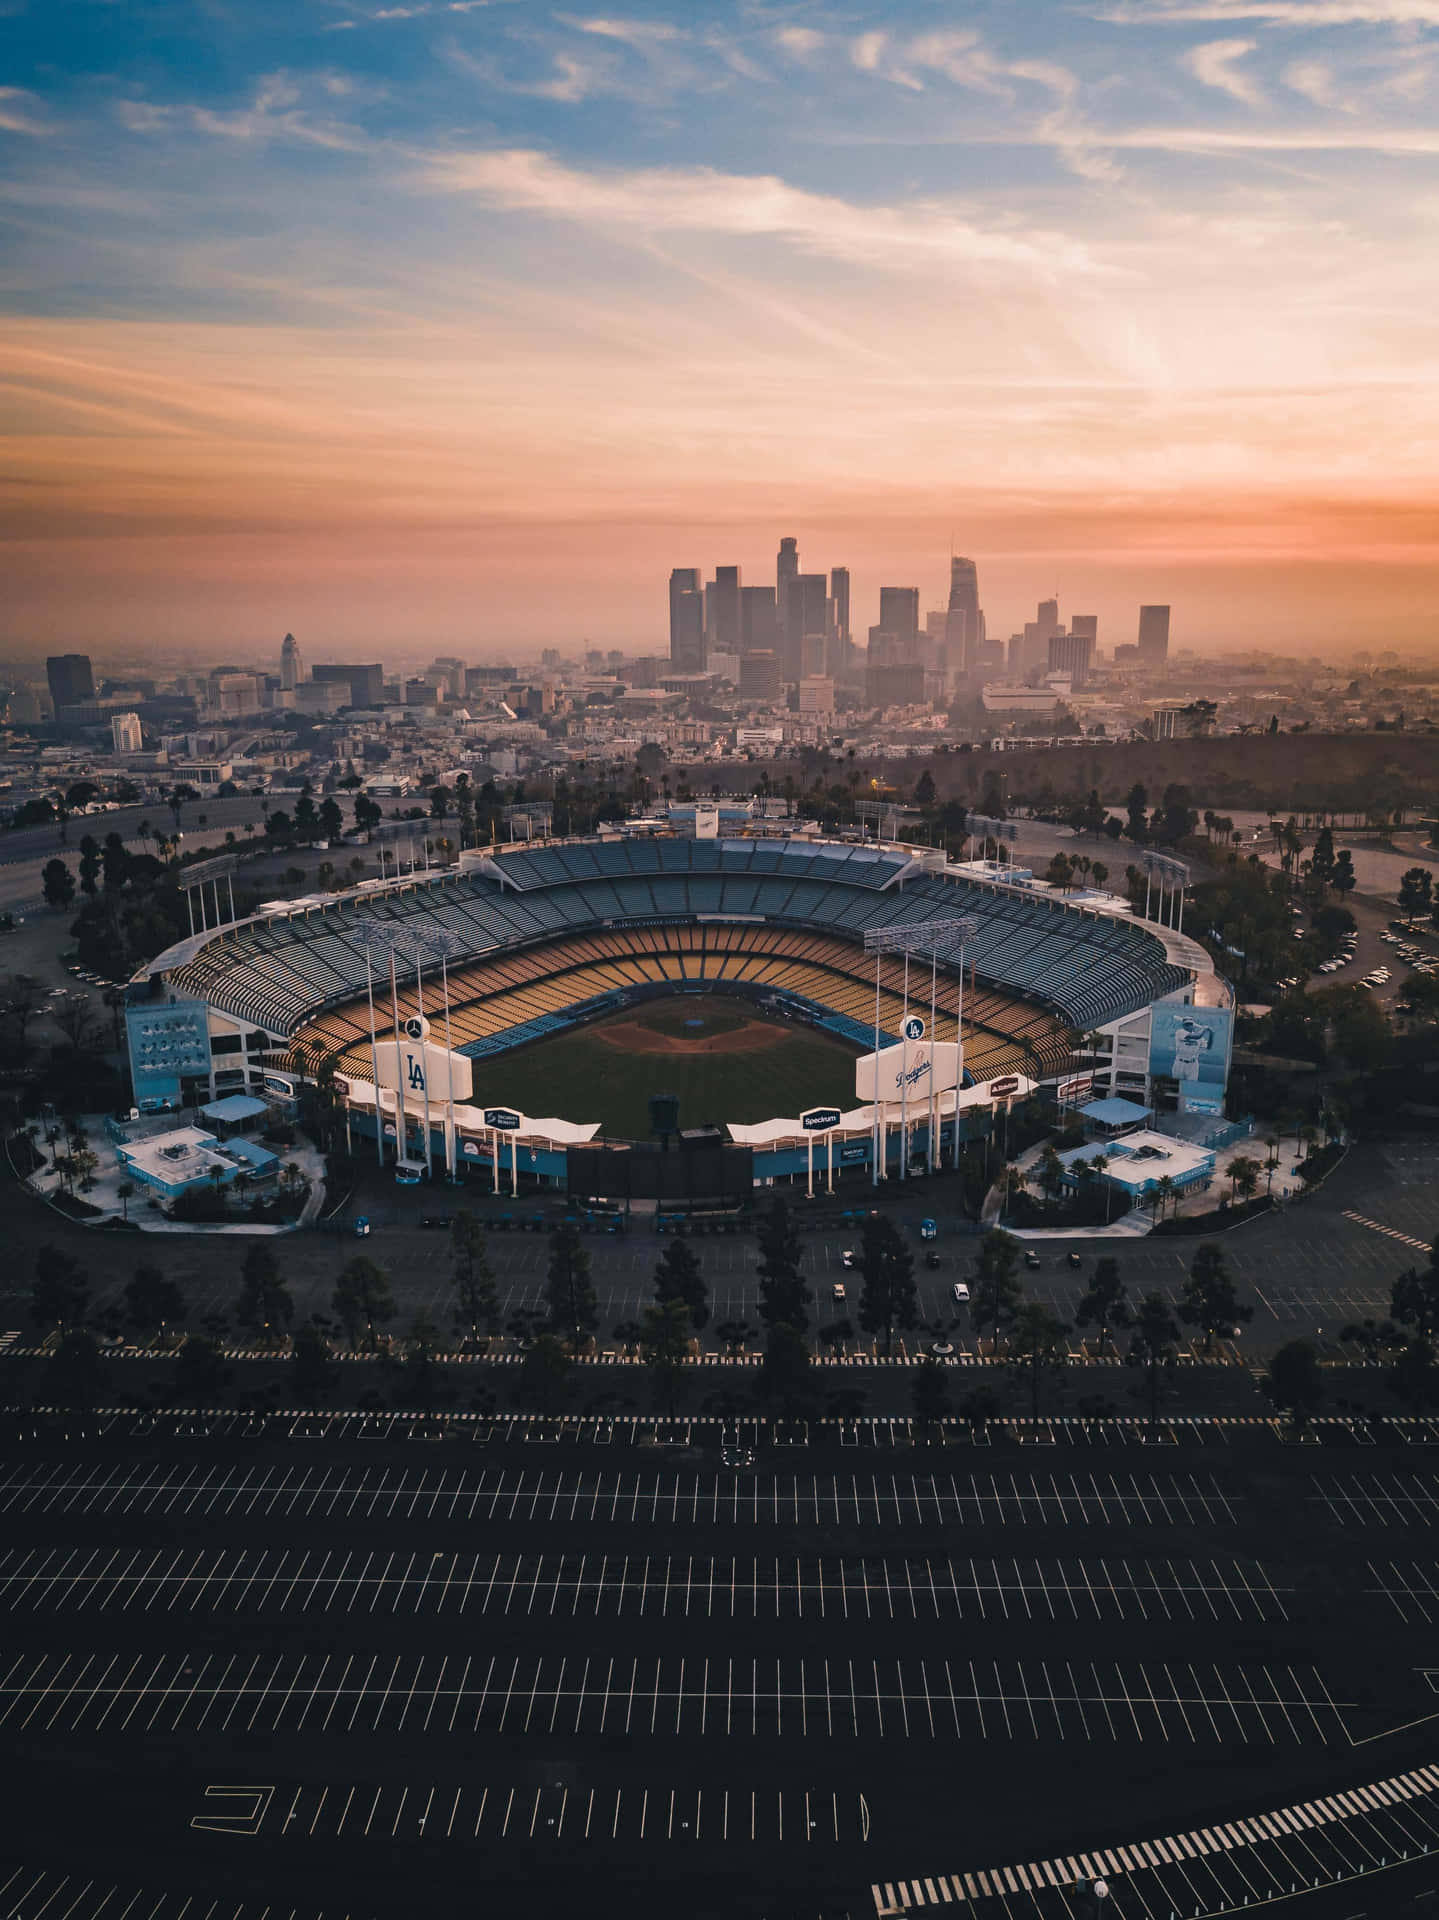 Hermosohorizonte De Los Ángeles Con El Estadio De Los Dodgers En Primer Plano. Fondo de pantalla